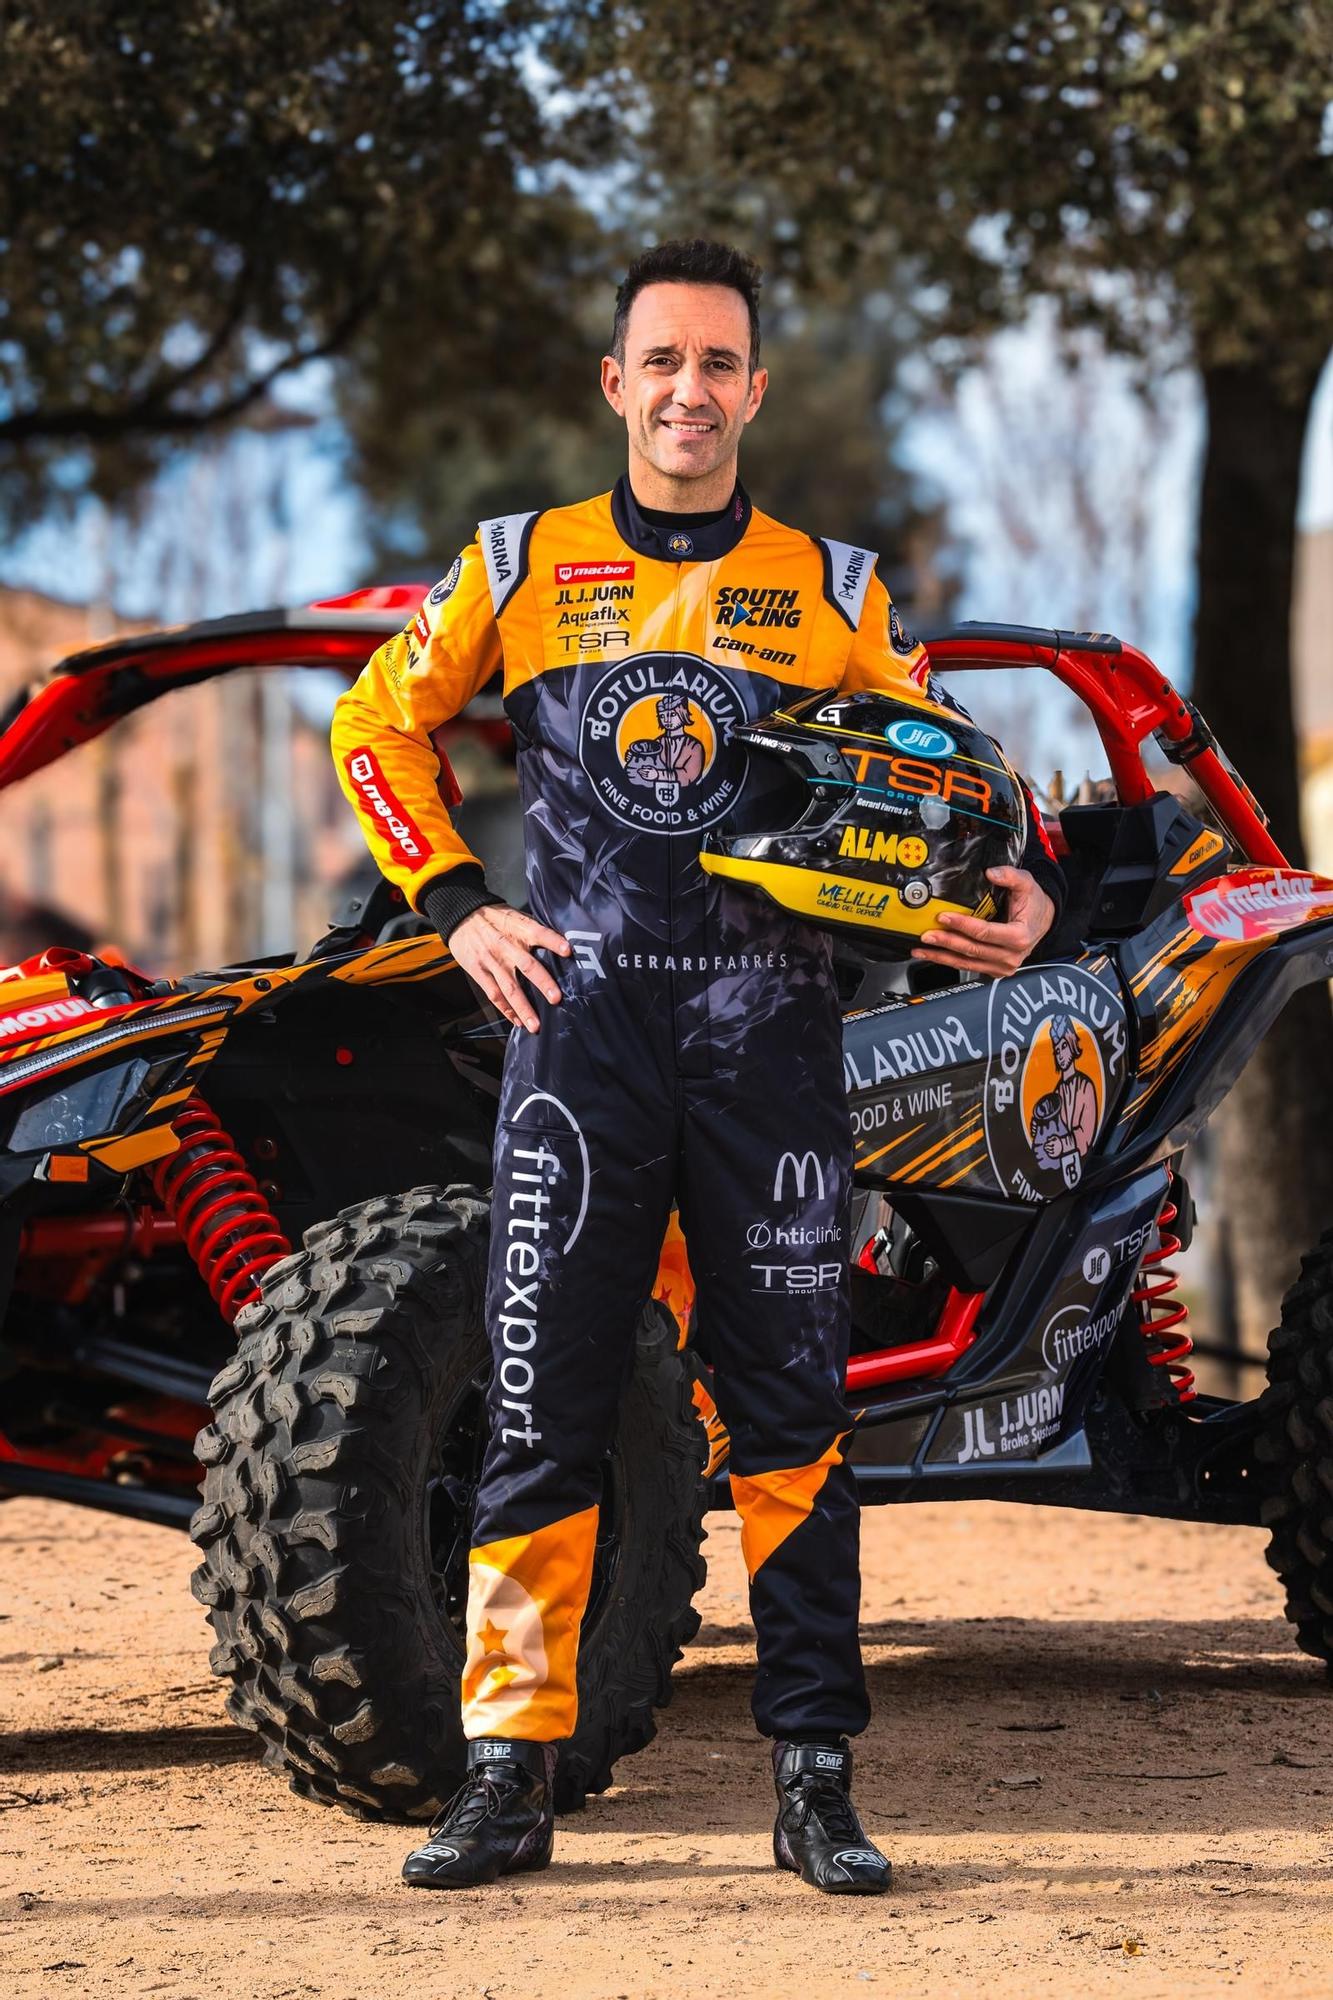 Imatges de Gerard Farrés amb el seu bugui de l'equip Can-Am South Racing per al Dakar 2024